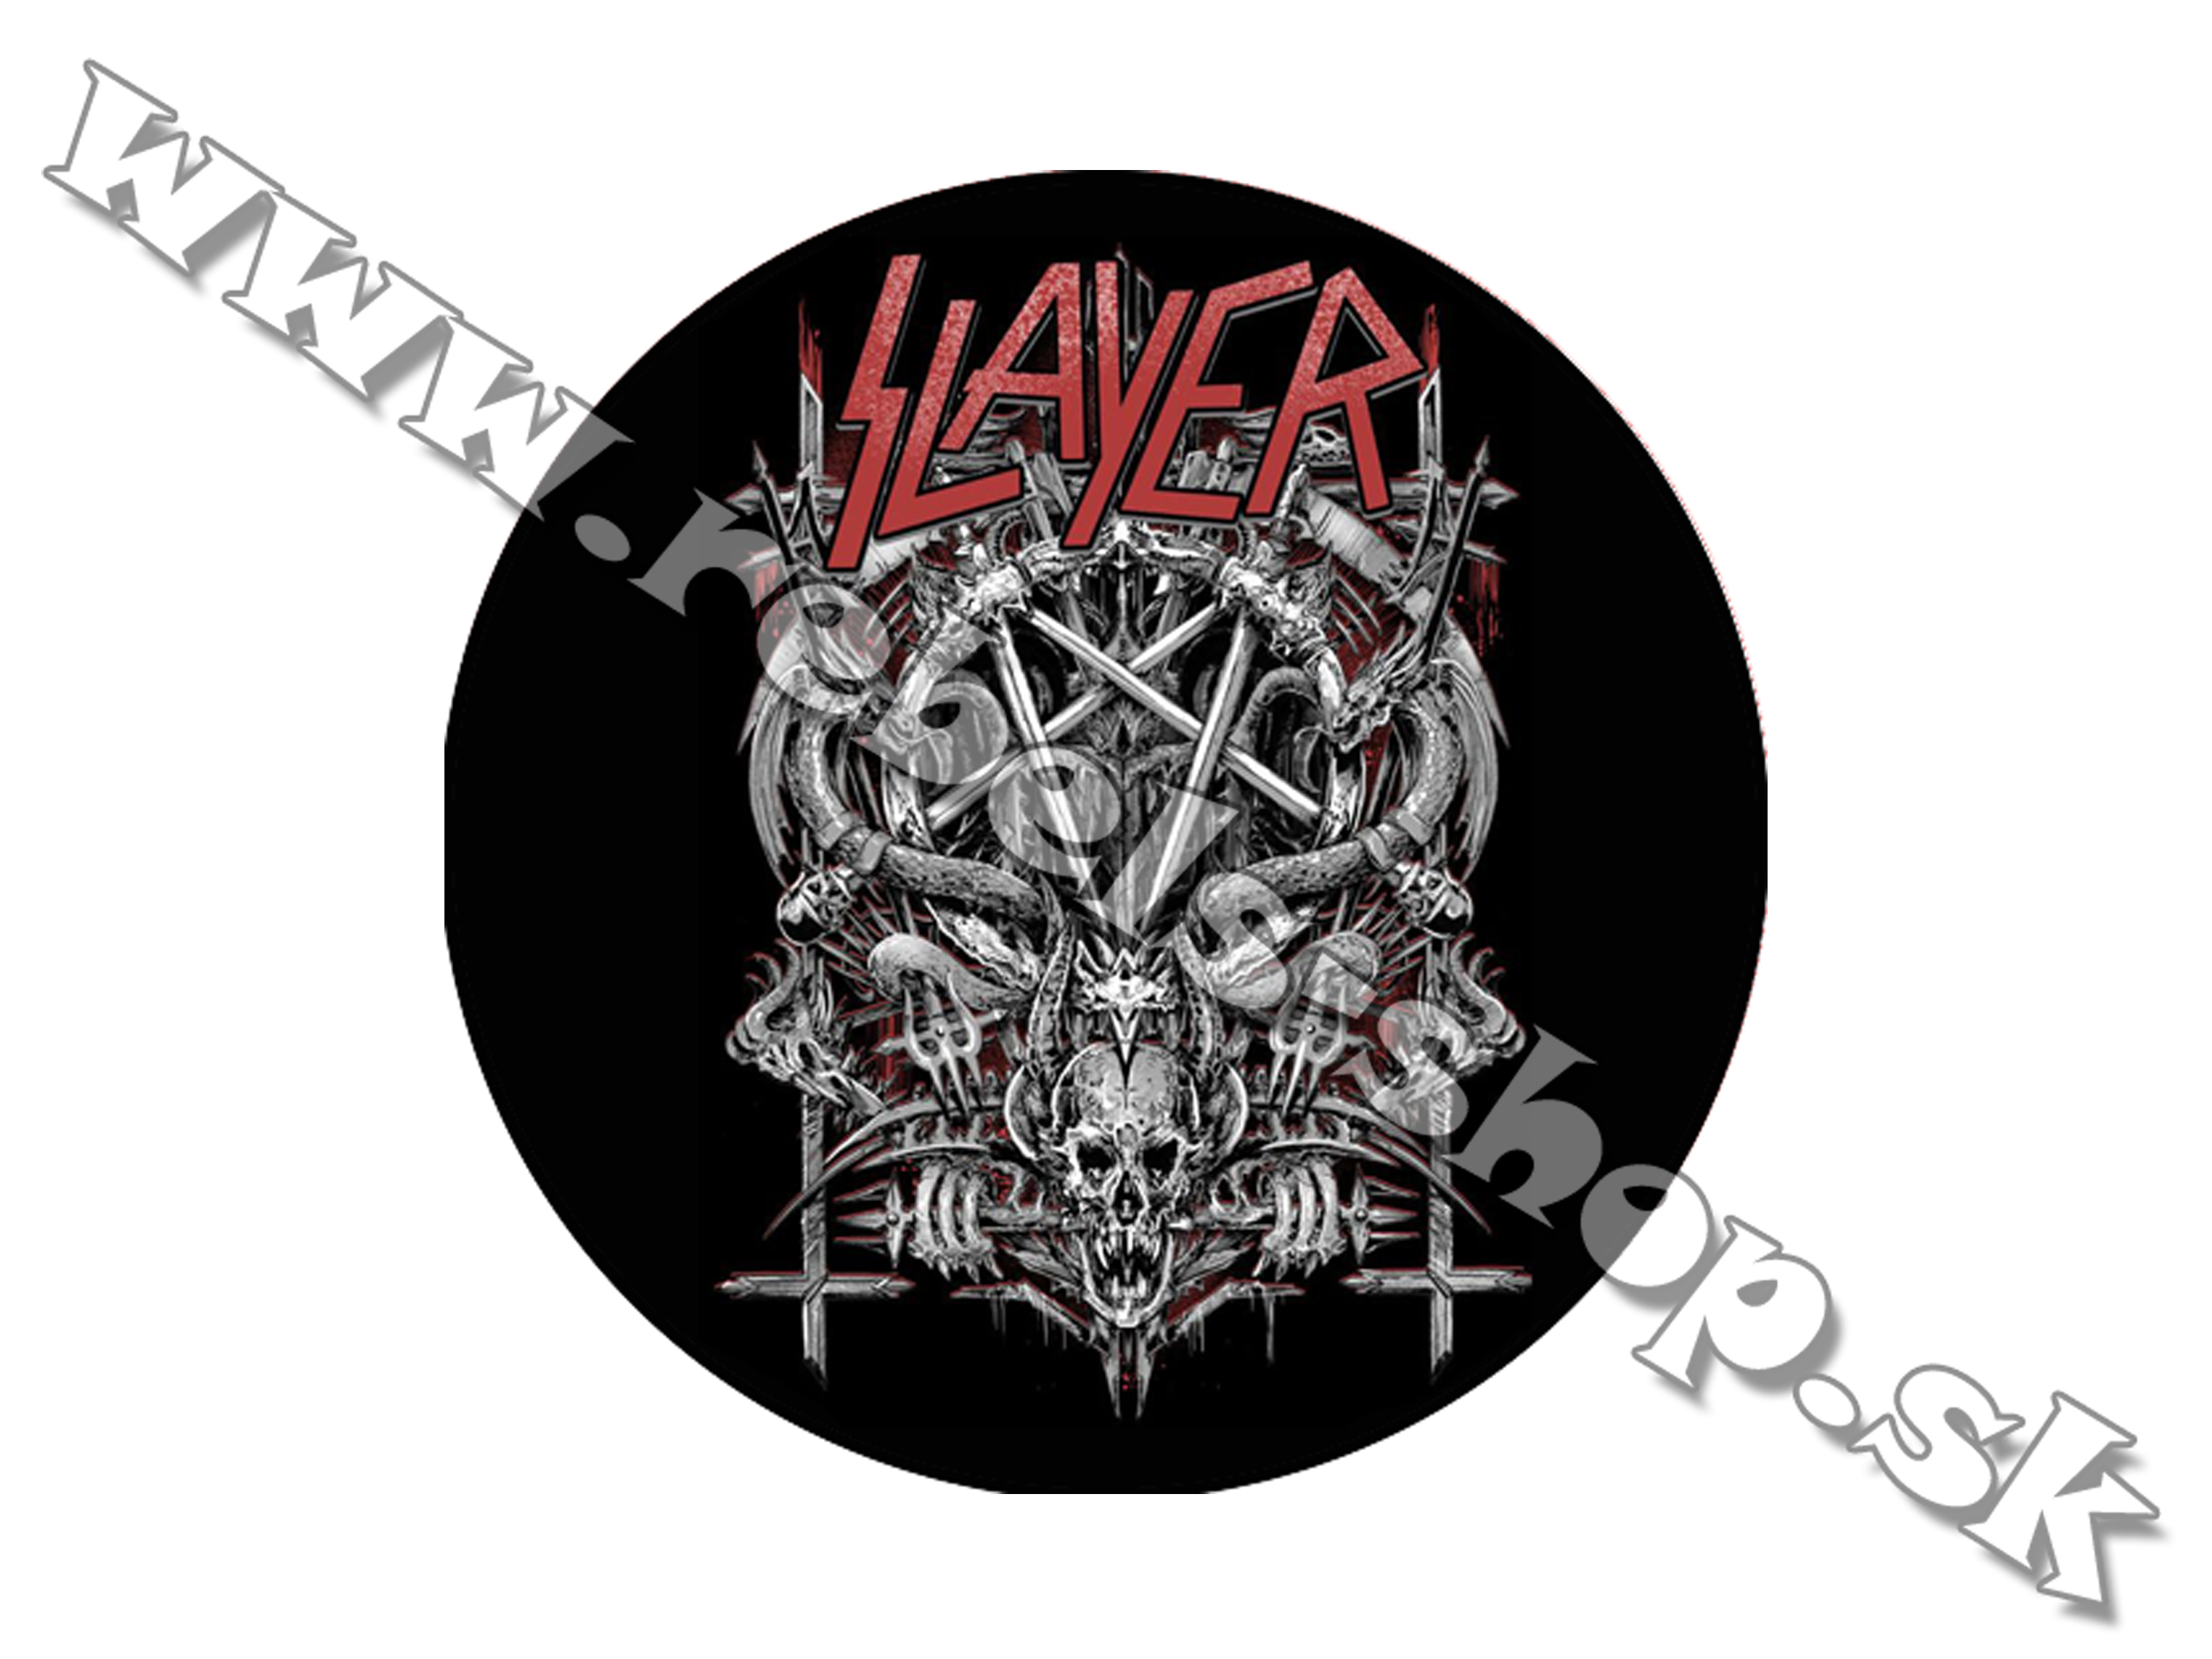 Odznak "Slayer"